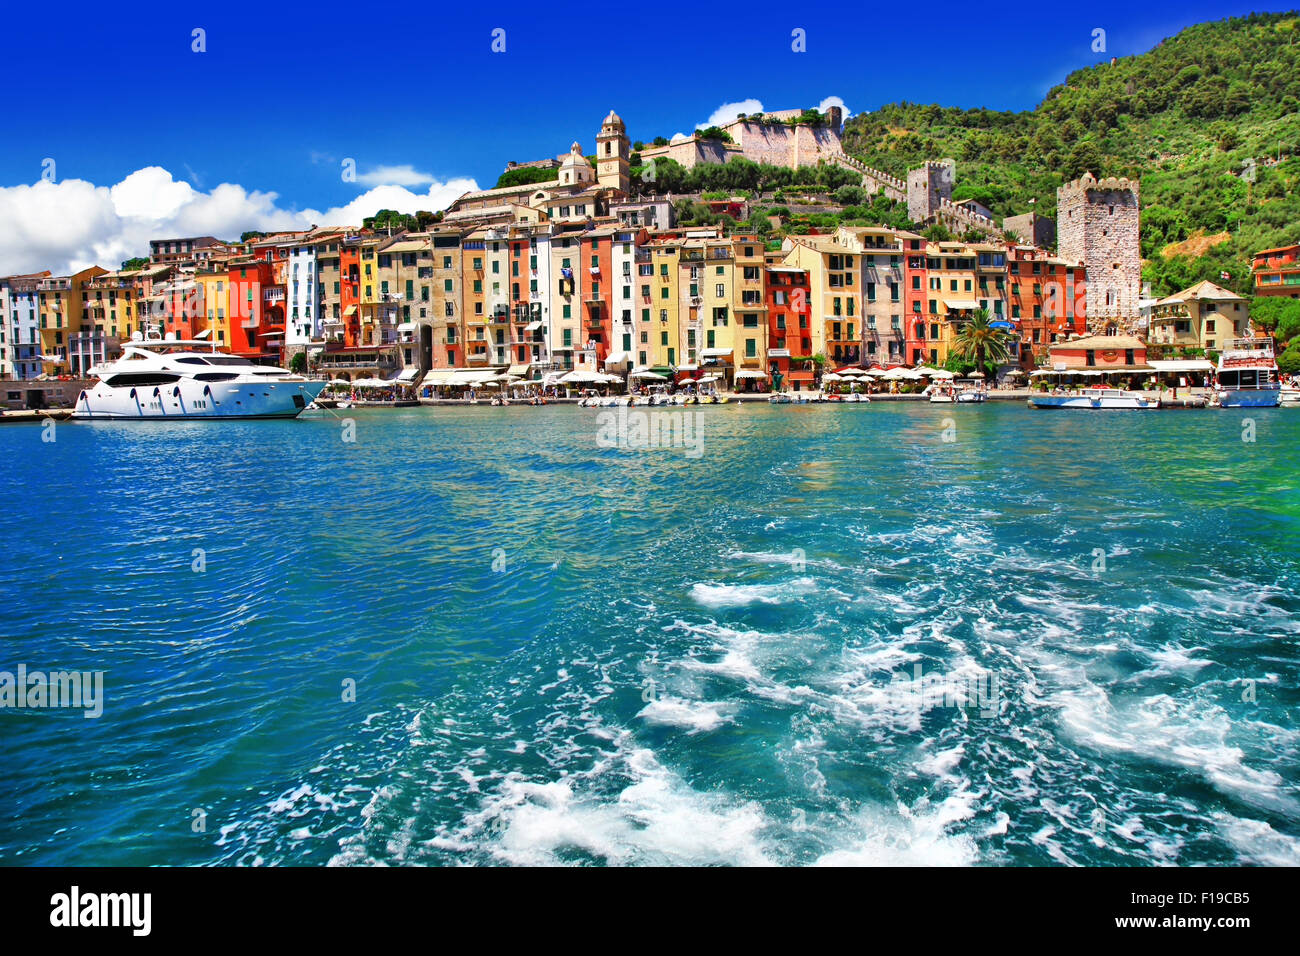 Portovenere - beautiful colorful village in Liguria, Cinque Terre. Italy Stock Photo